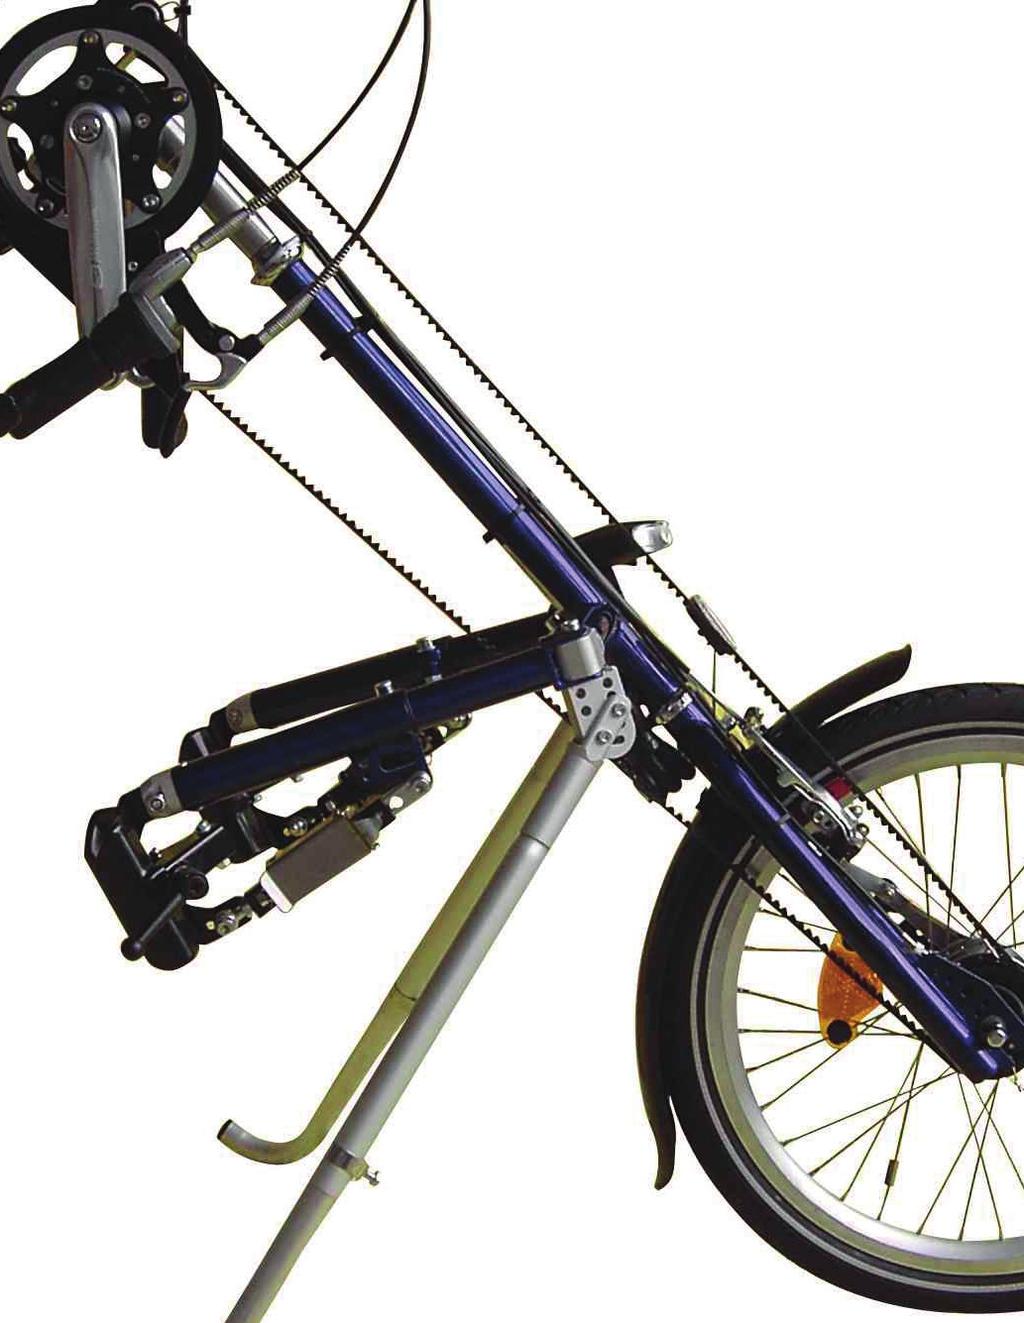 KÄSIPOLKUPYÖRÄ STRICKER CITY Stricker City on pyörätuoliin liitettävä 7-, 8- tai 11-vaihteinen käsipolkupyörä, joka on helppo kiinnittää lähes jokaisen pyörätuolin eteen riippumatta runkoputken